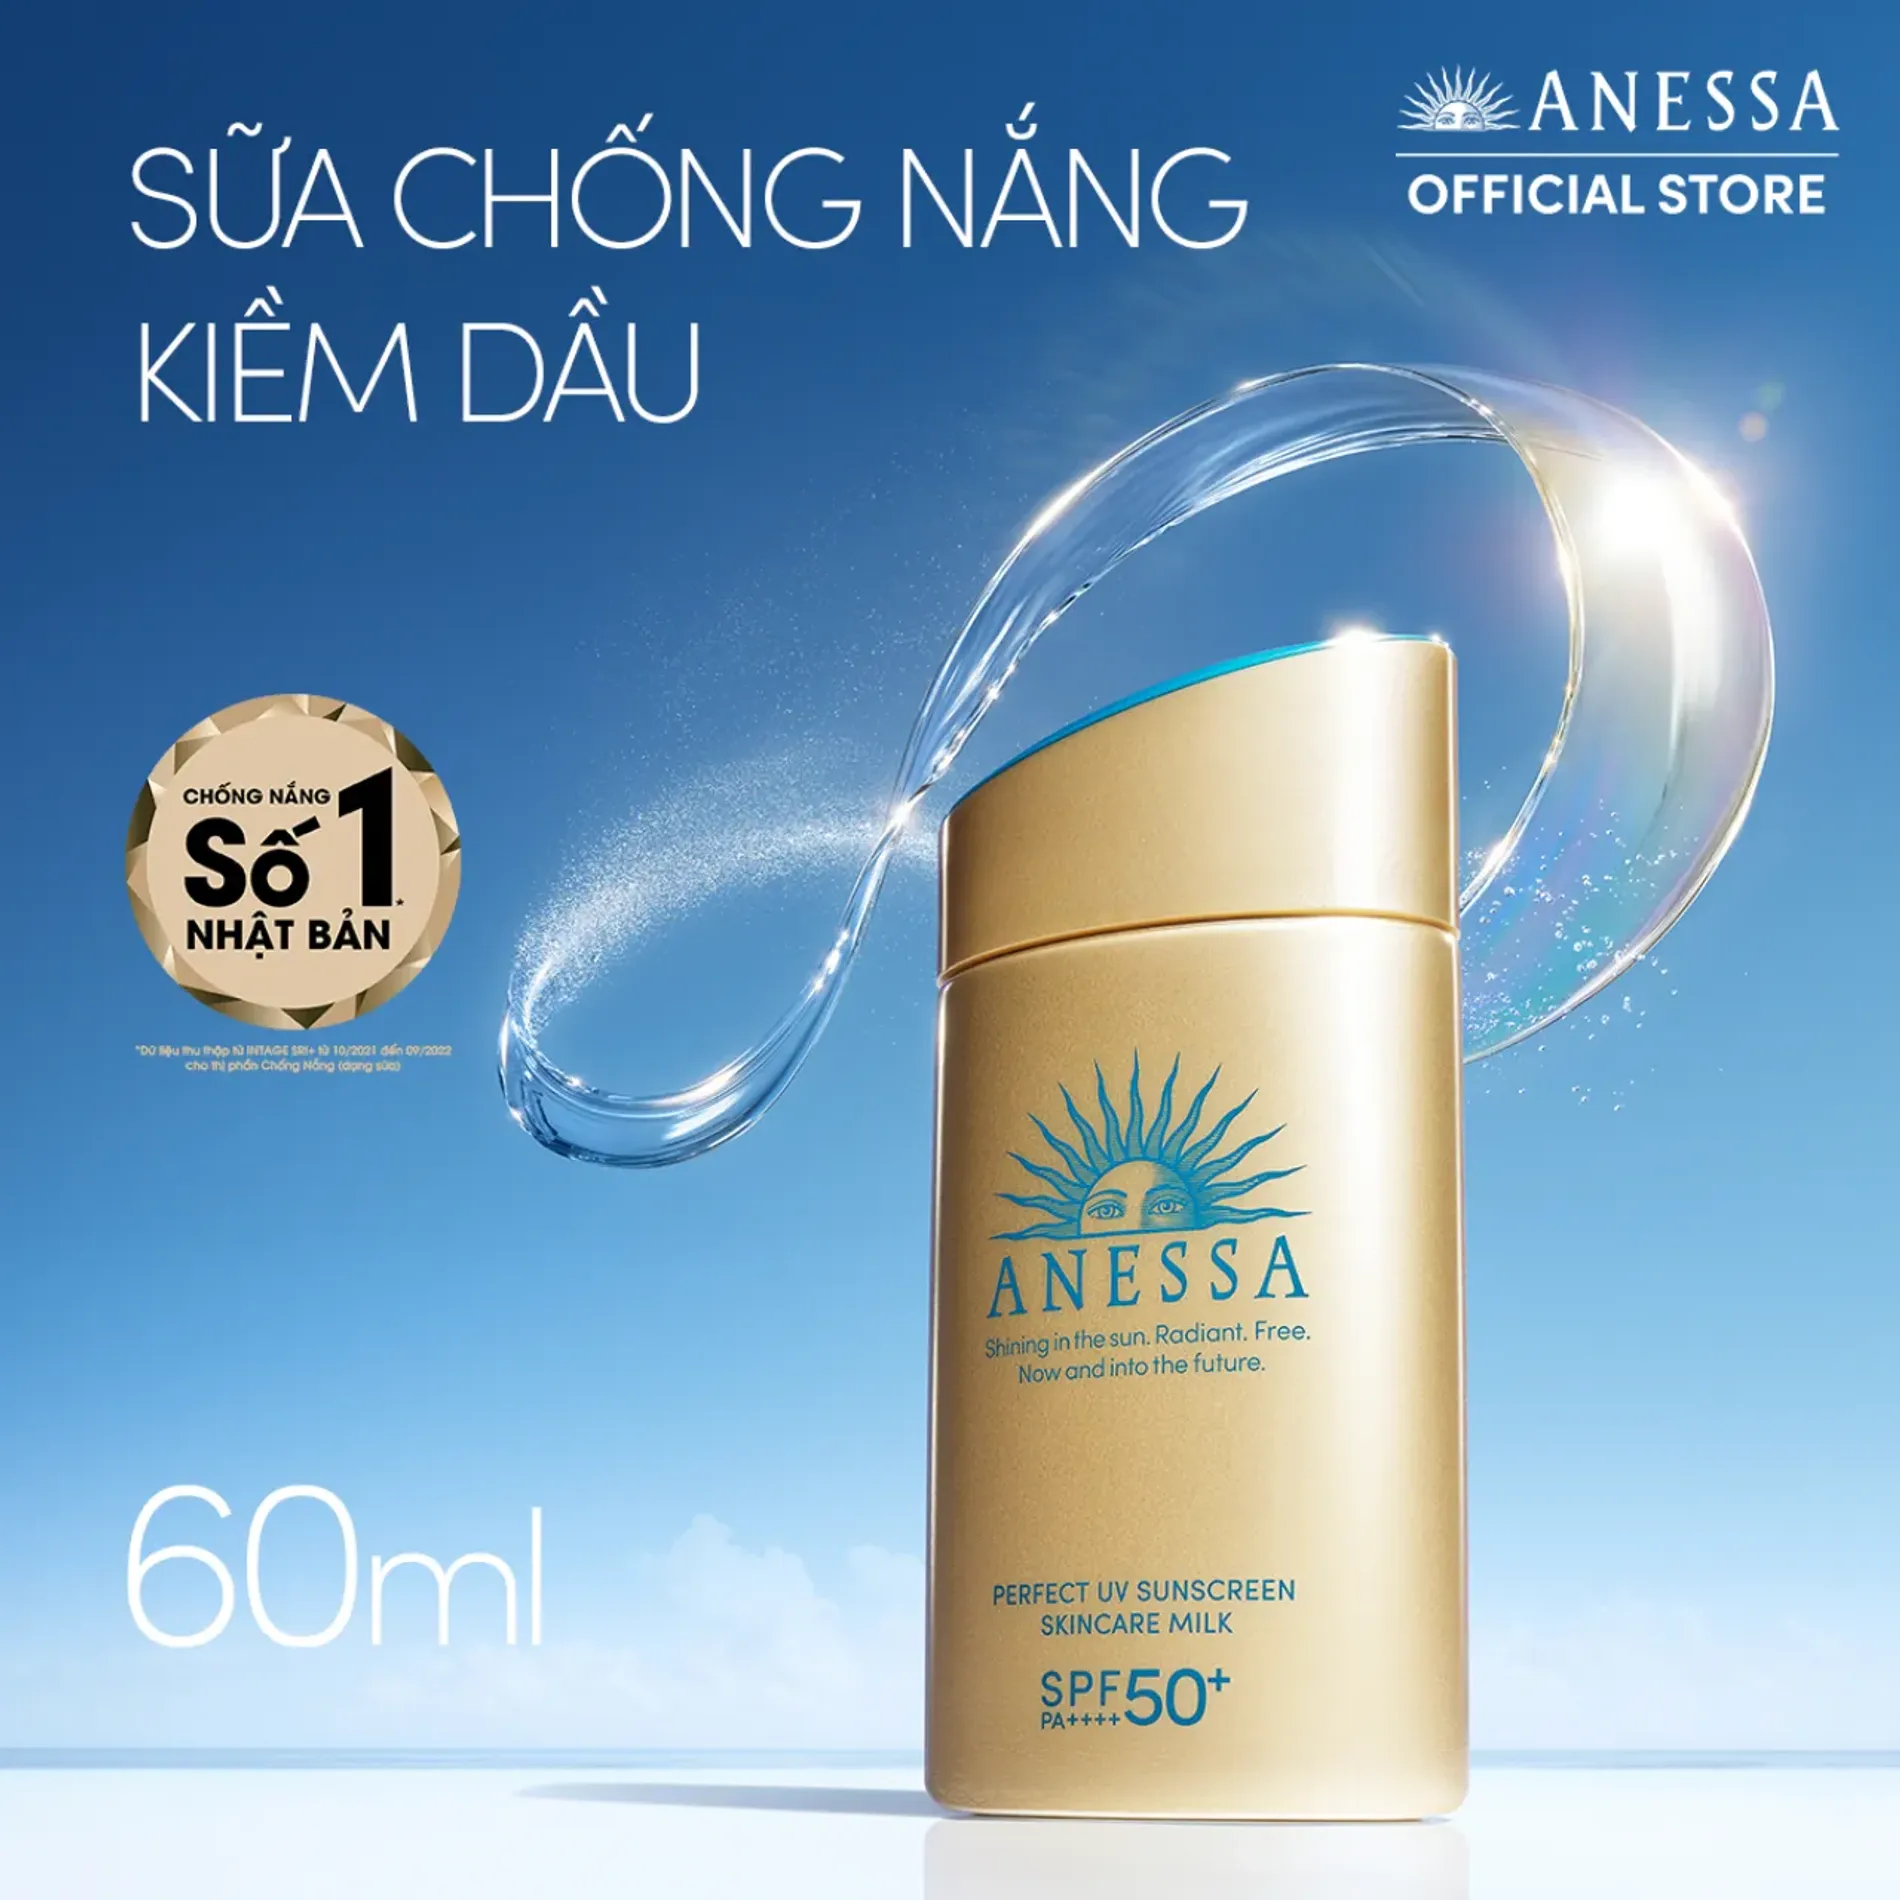 sua-chong-nang-duong-da-kiem-dau-anessa-perfect-uv-sunscreen-skincare-milk-spf50-pa-60ml-3